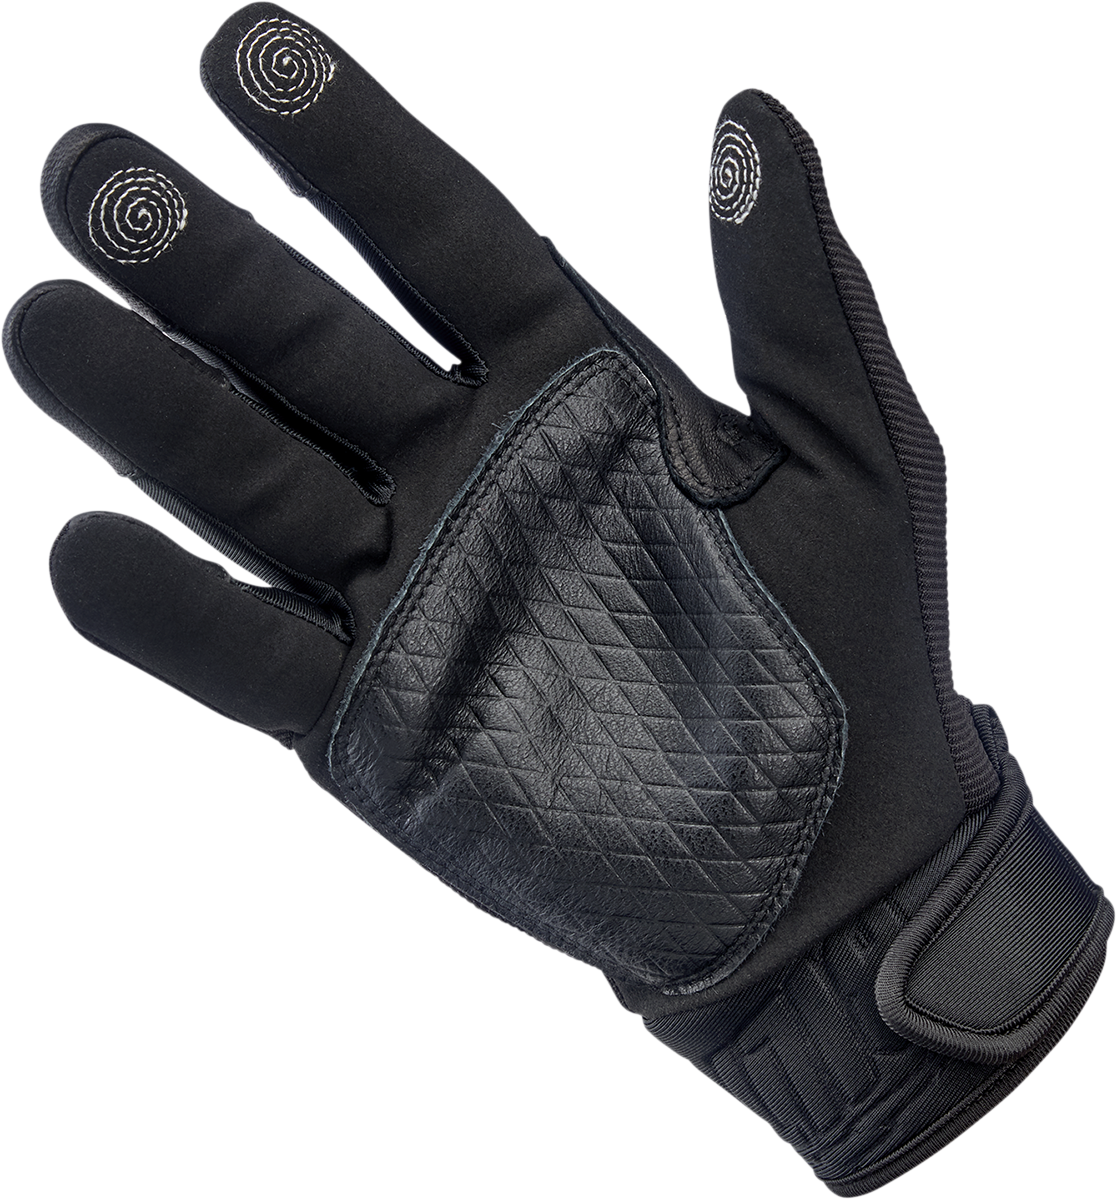 BILTWELL Baja Gloves - Black Out - Large 1508-0101-304